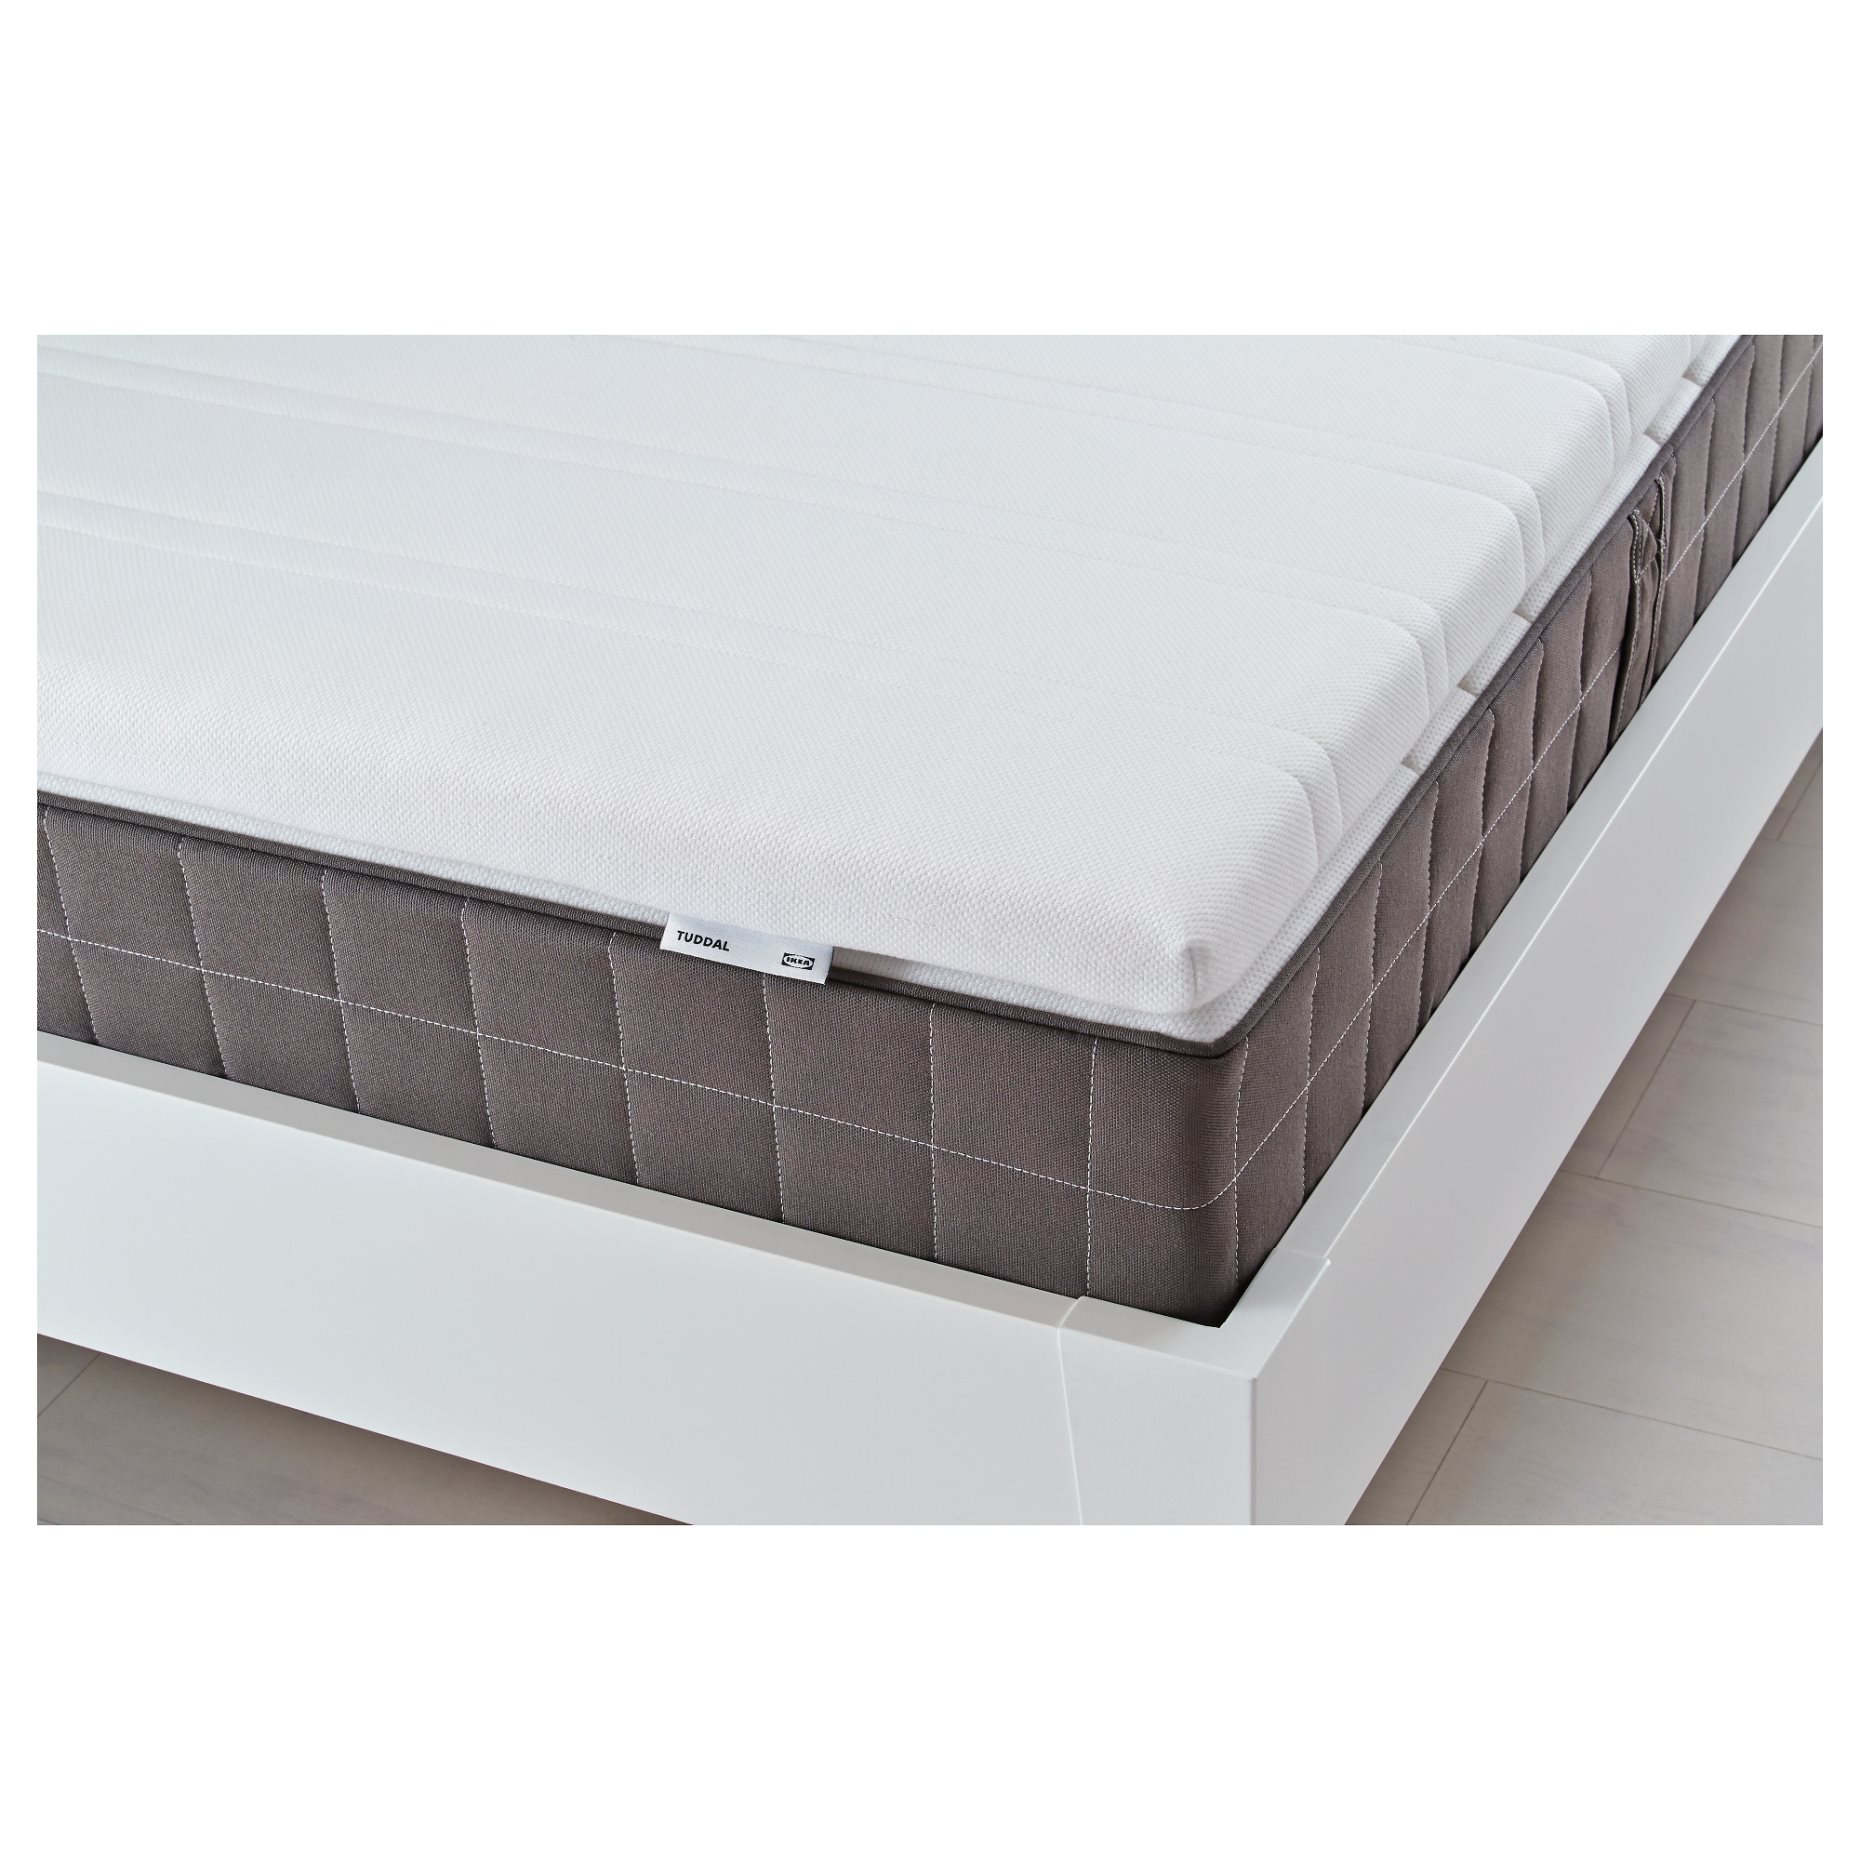 TUDDAL, mattress pad, 702.981.82